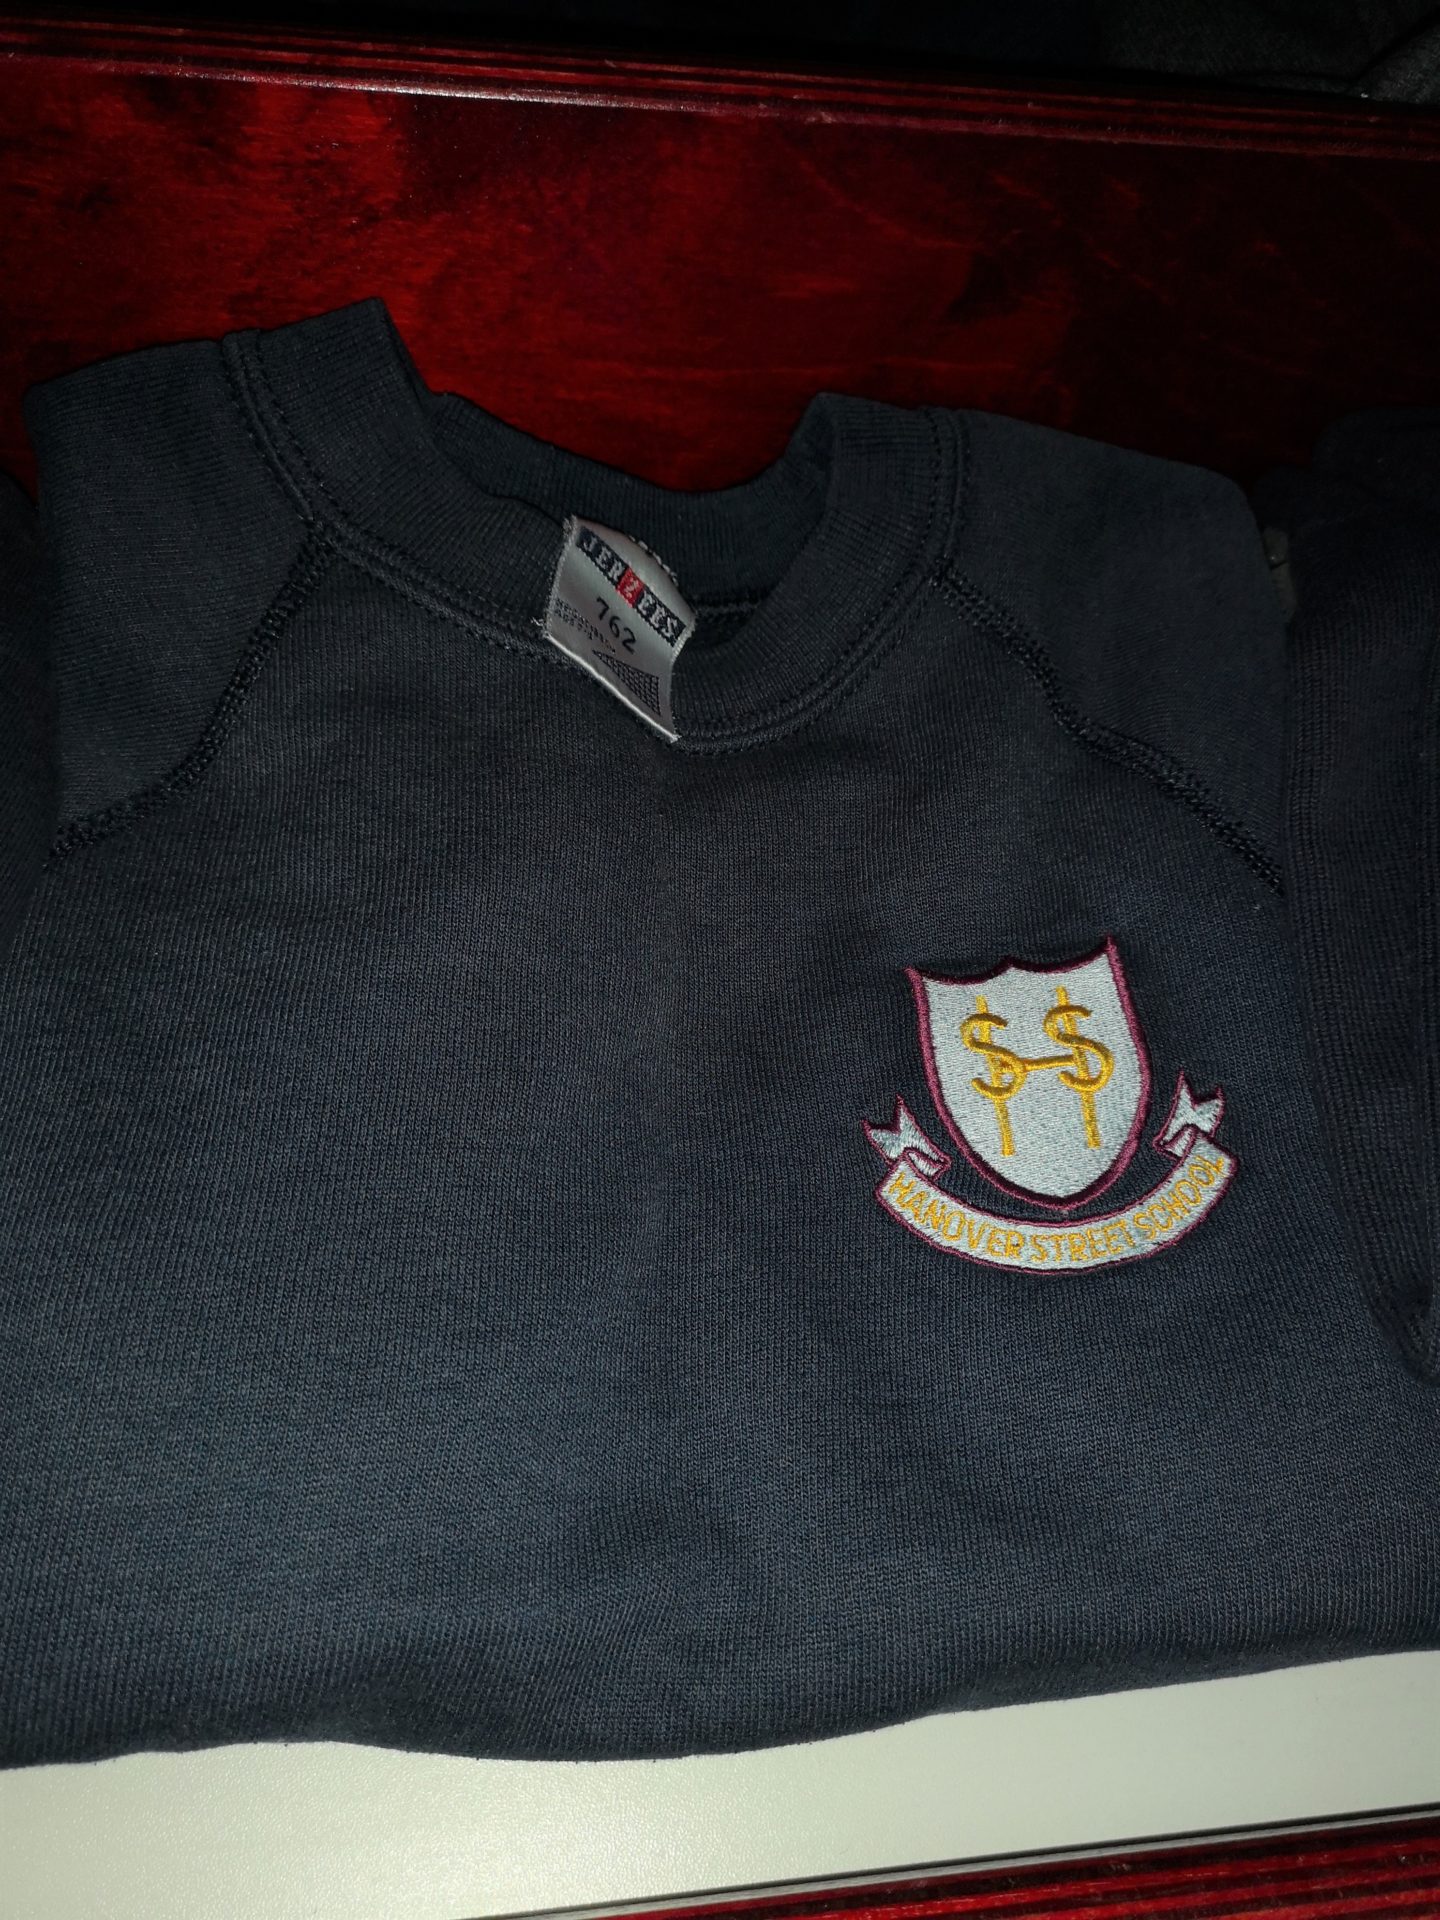 uniform 5 – Hanover Street School, Aberdeen